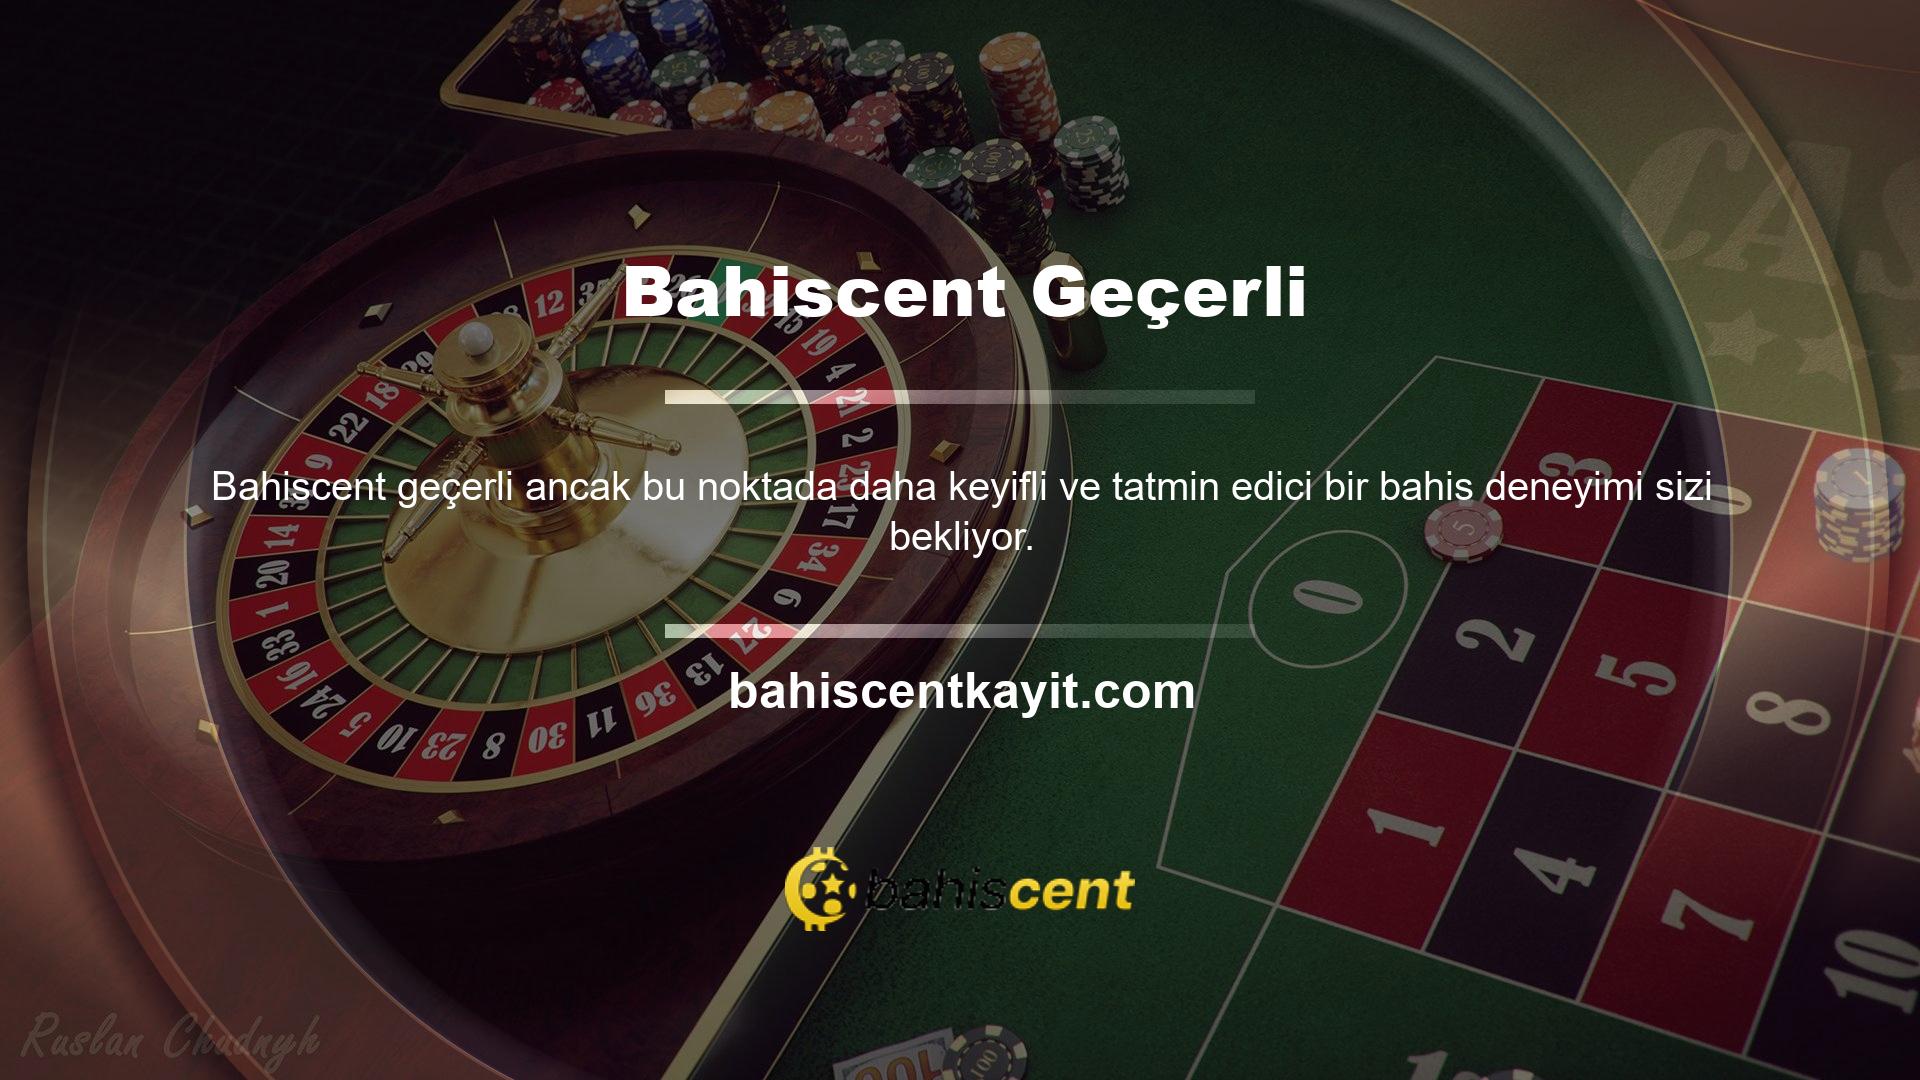 Oyuncuların Bahiscent erişmek için Bahiscent geçerli bir giriş bağlantısı kullanmaları gerekir